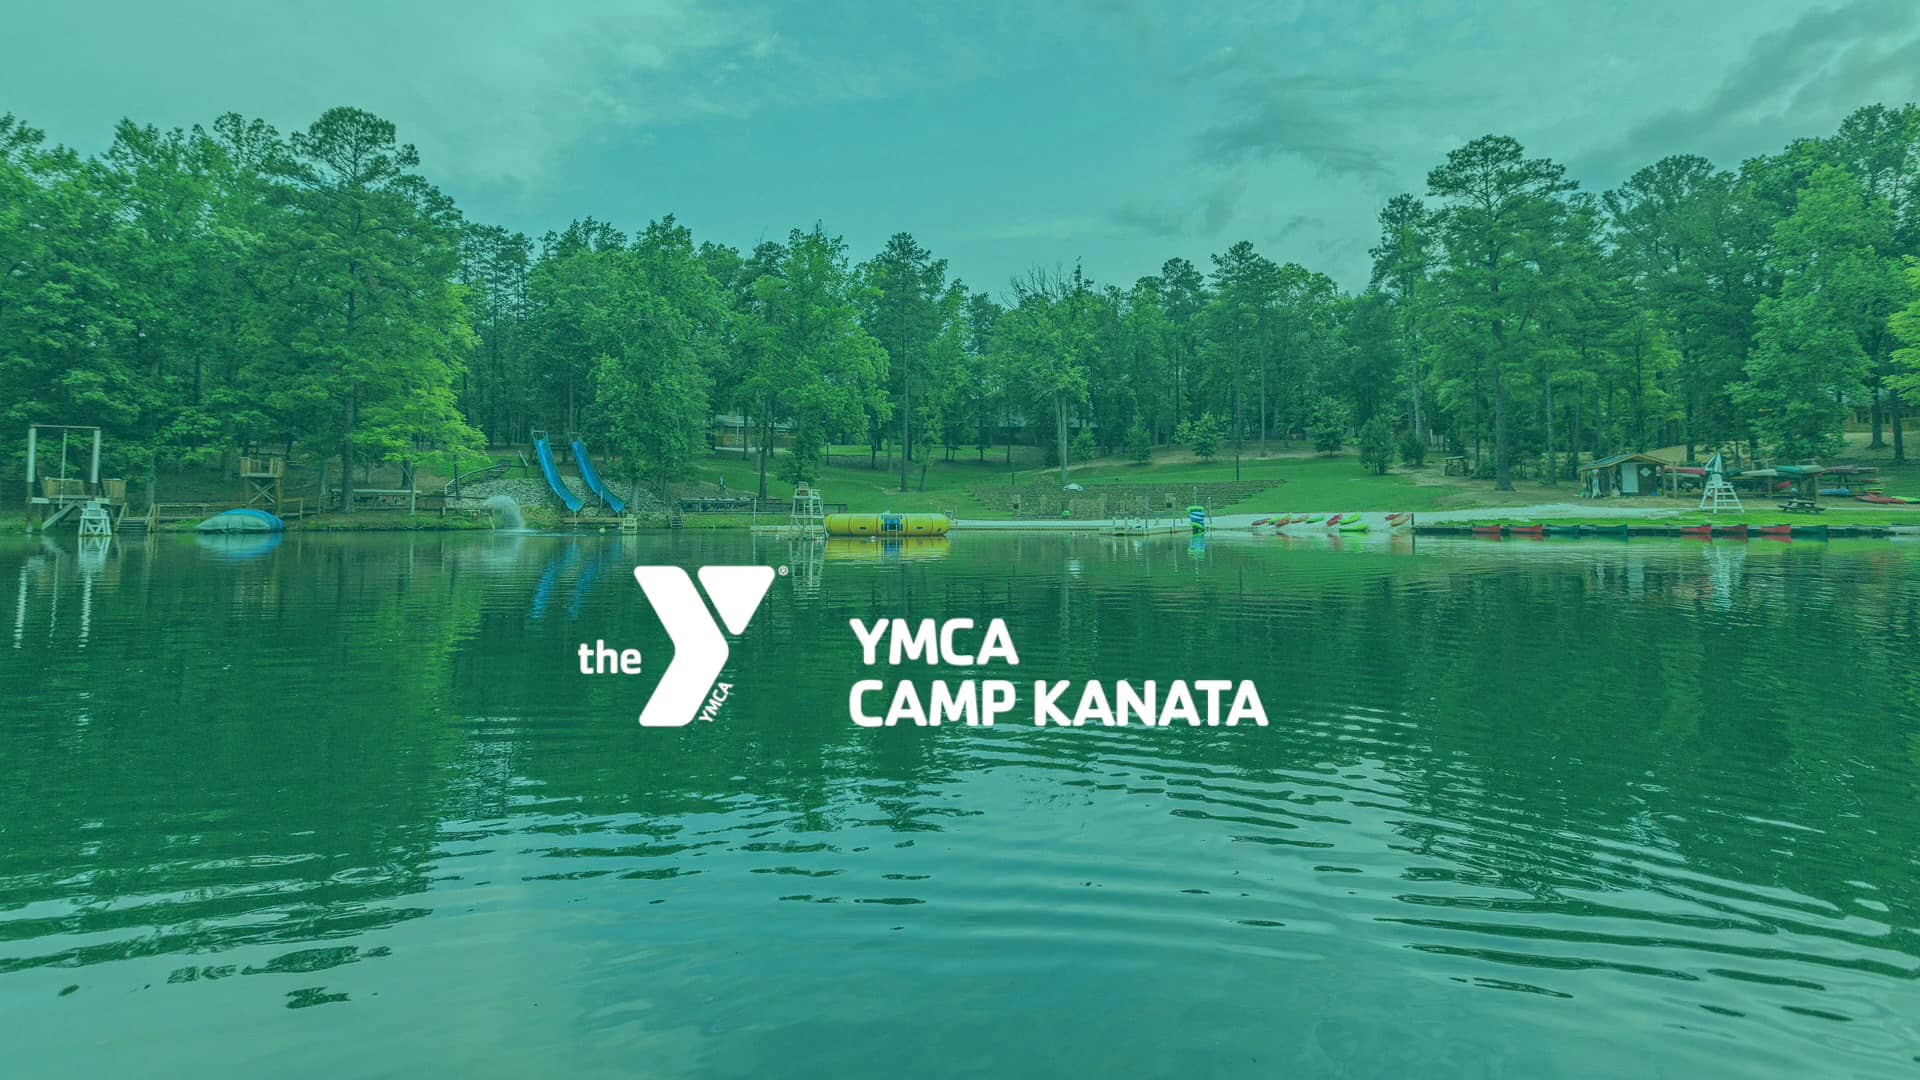 YMCA Camp Kanata on Vimeo